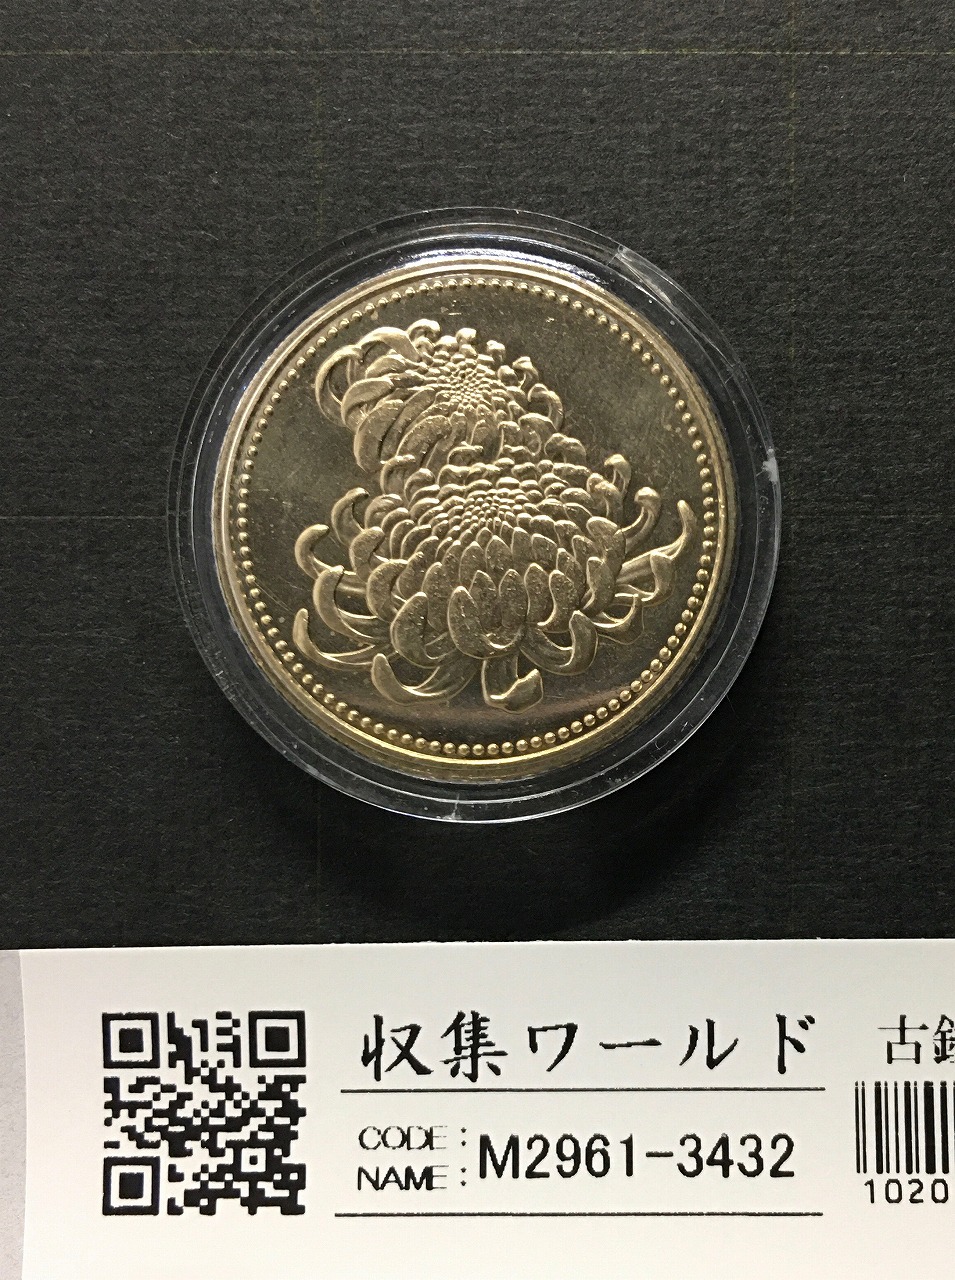 天皇陛下御在位20年記念 500円ニッケル黄銅貨 2009年銘版 カプセル入 未使用